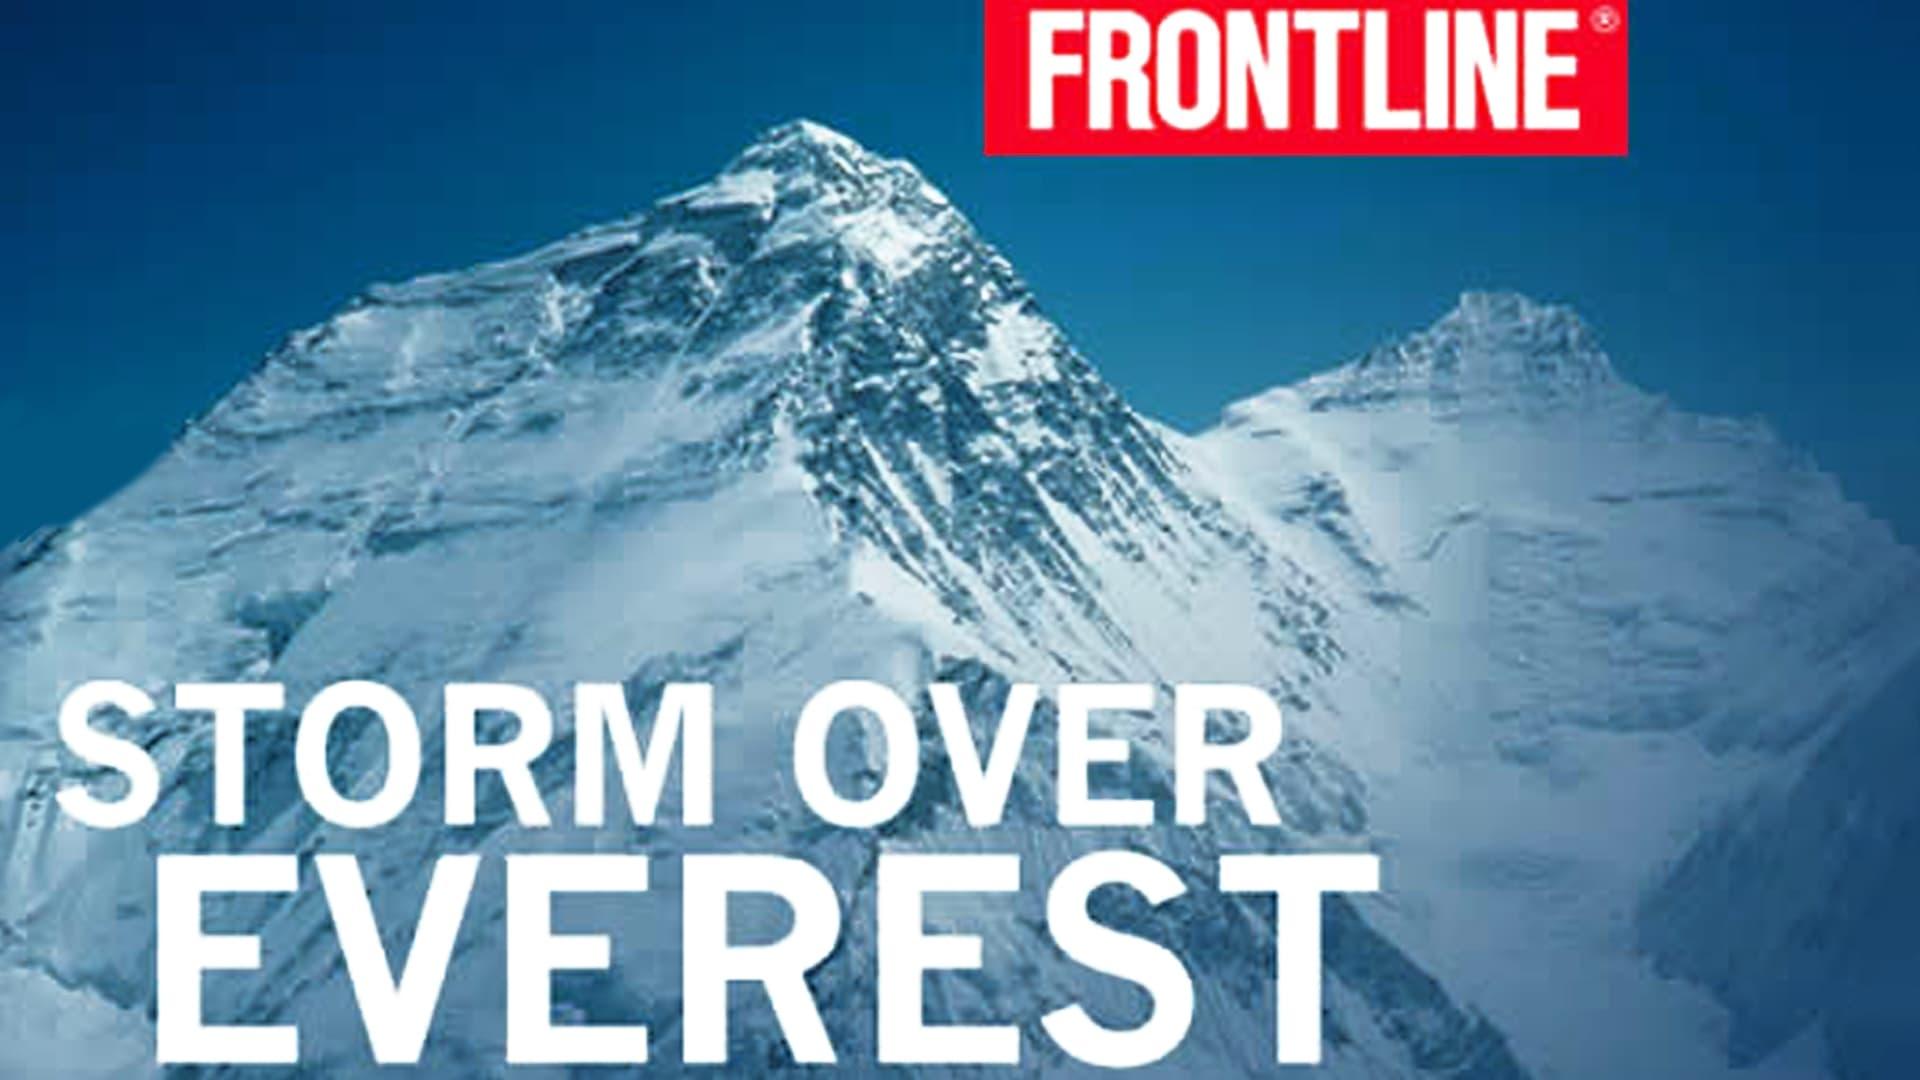 Storm Over Everest backdrop